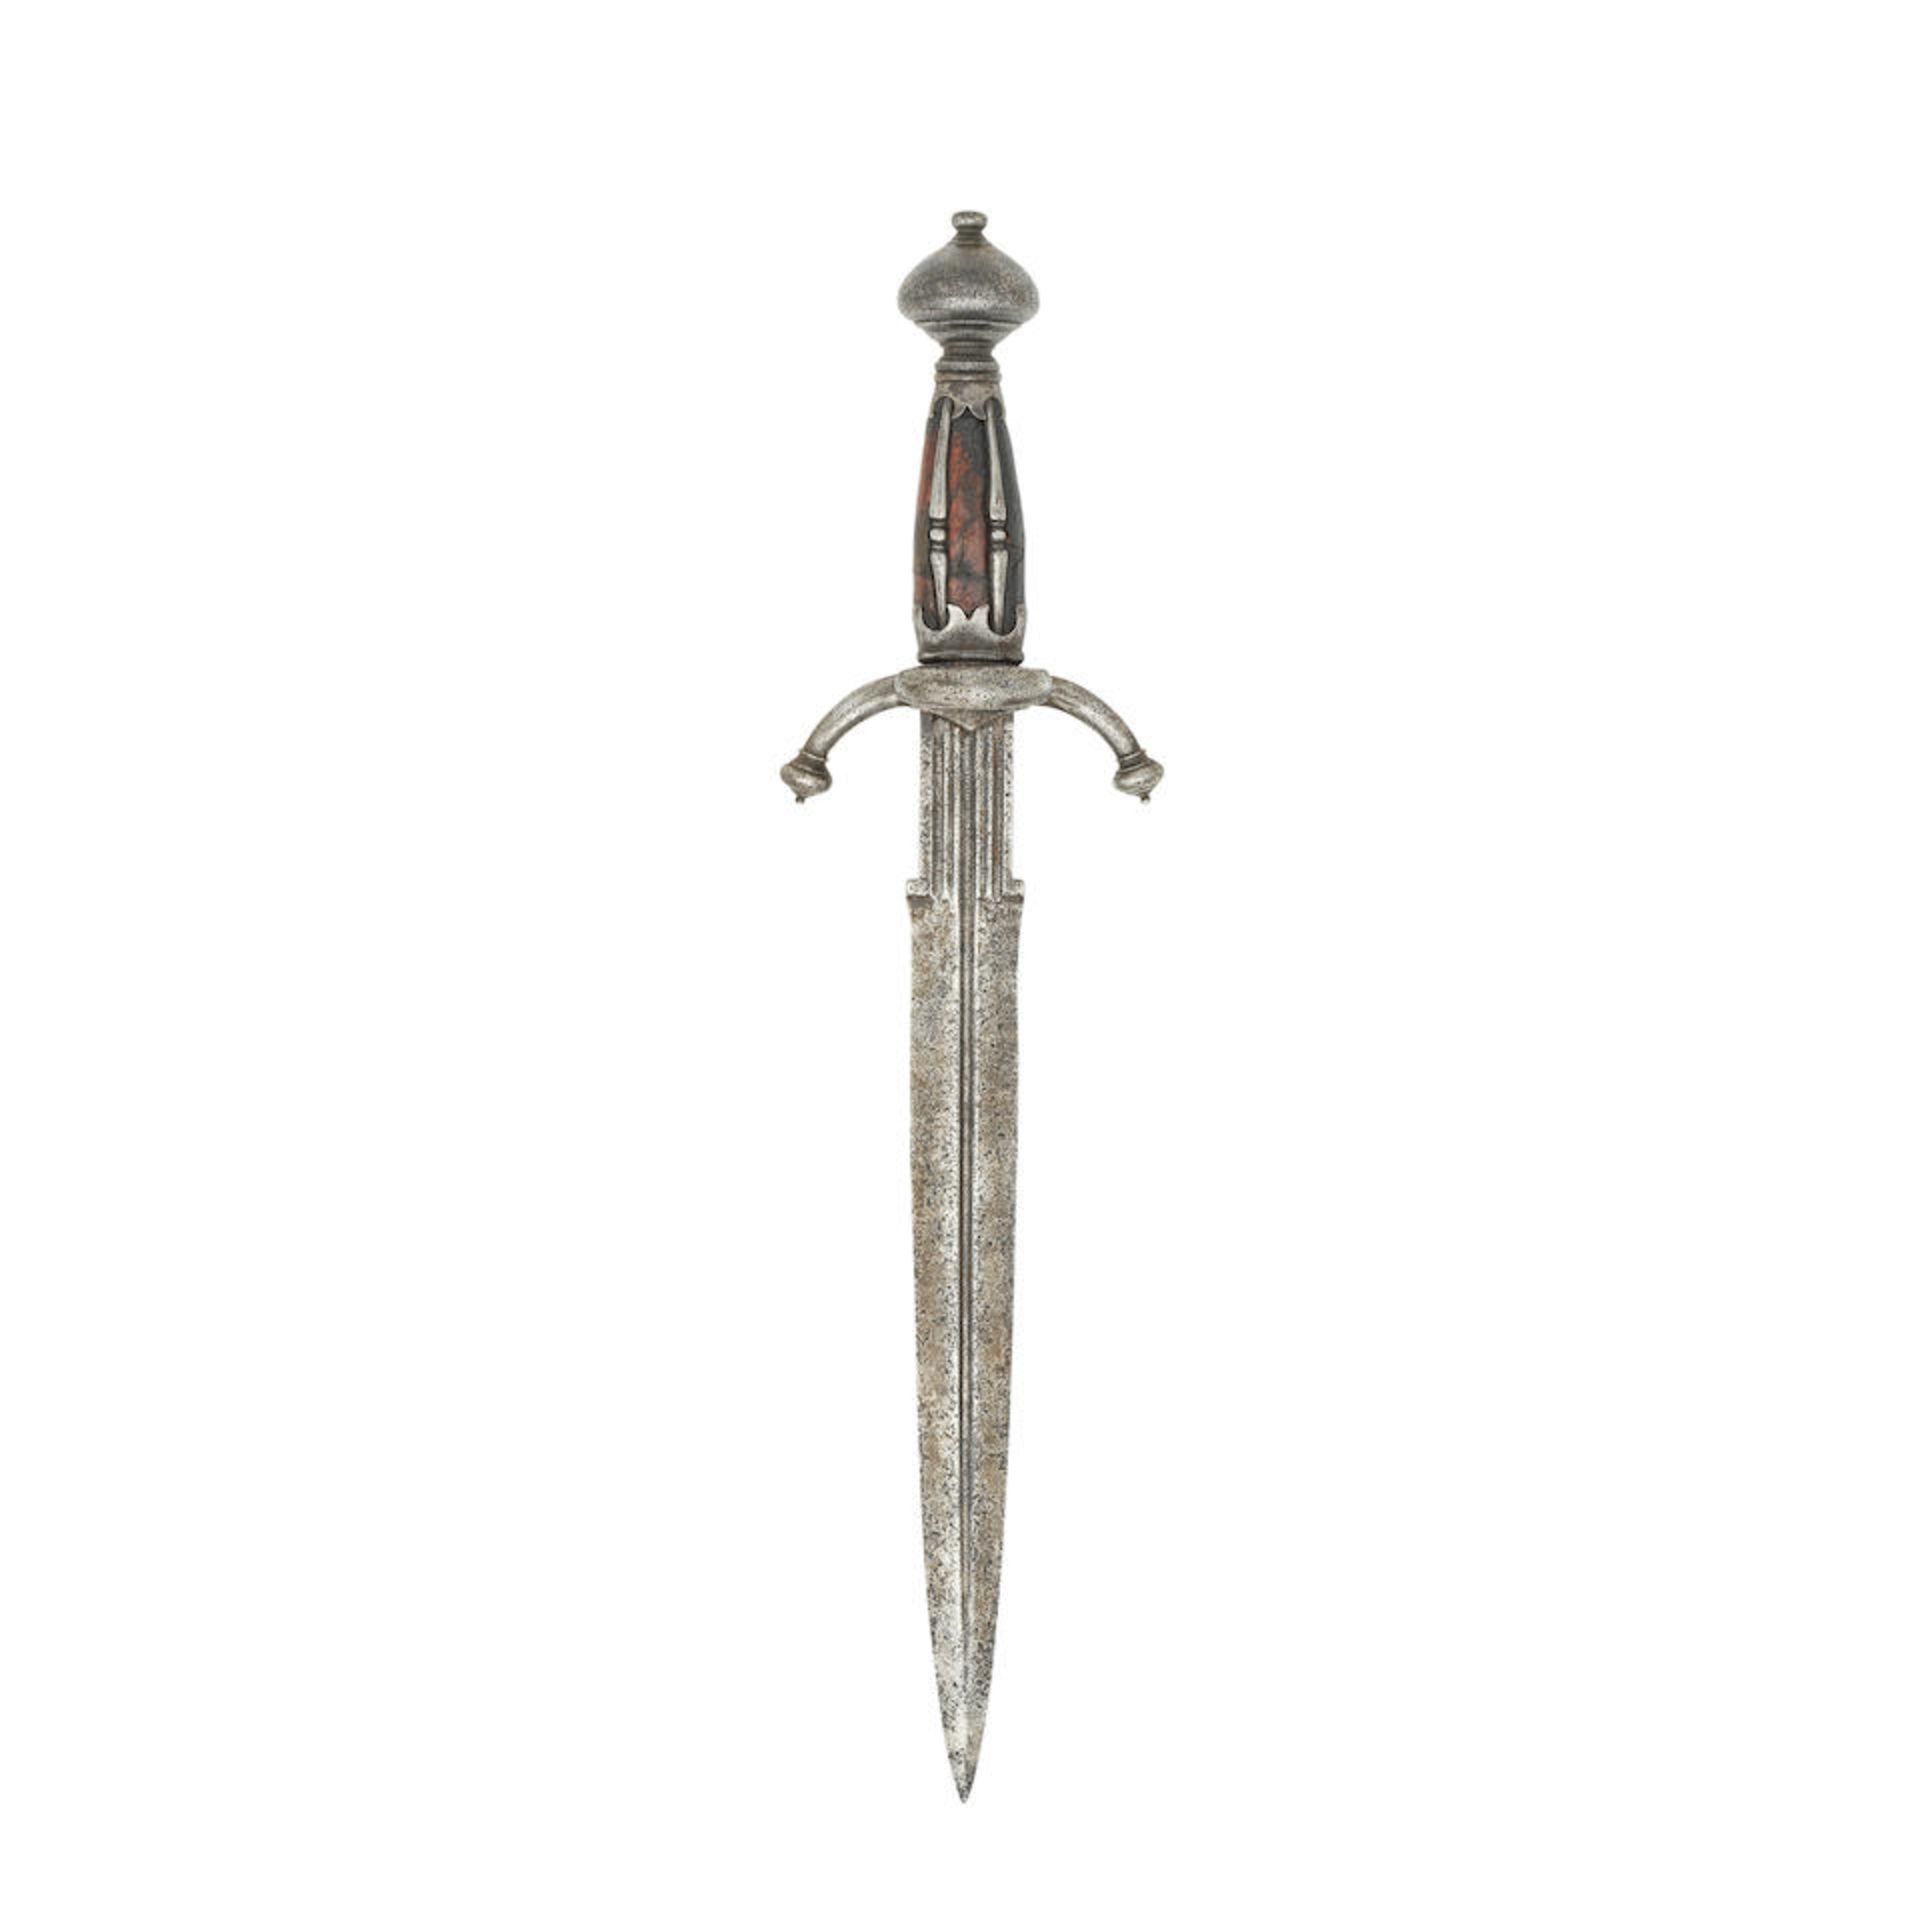 A German Left-Hand Dagger